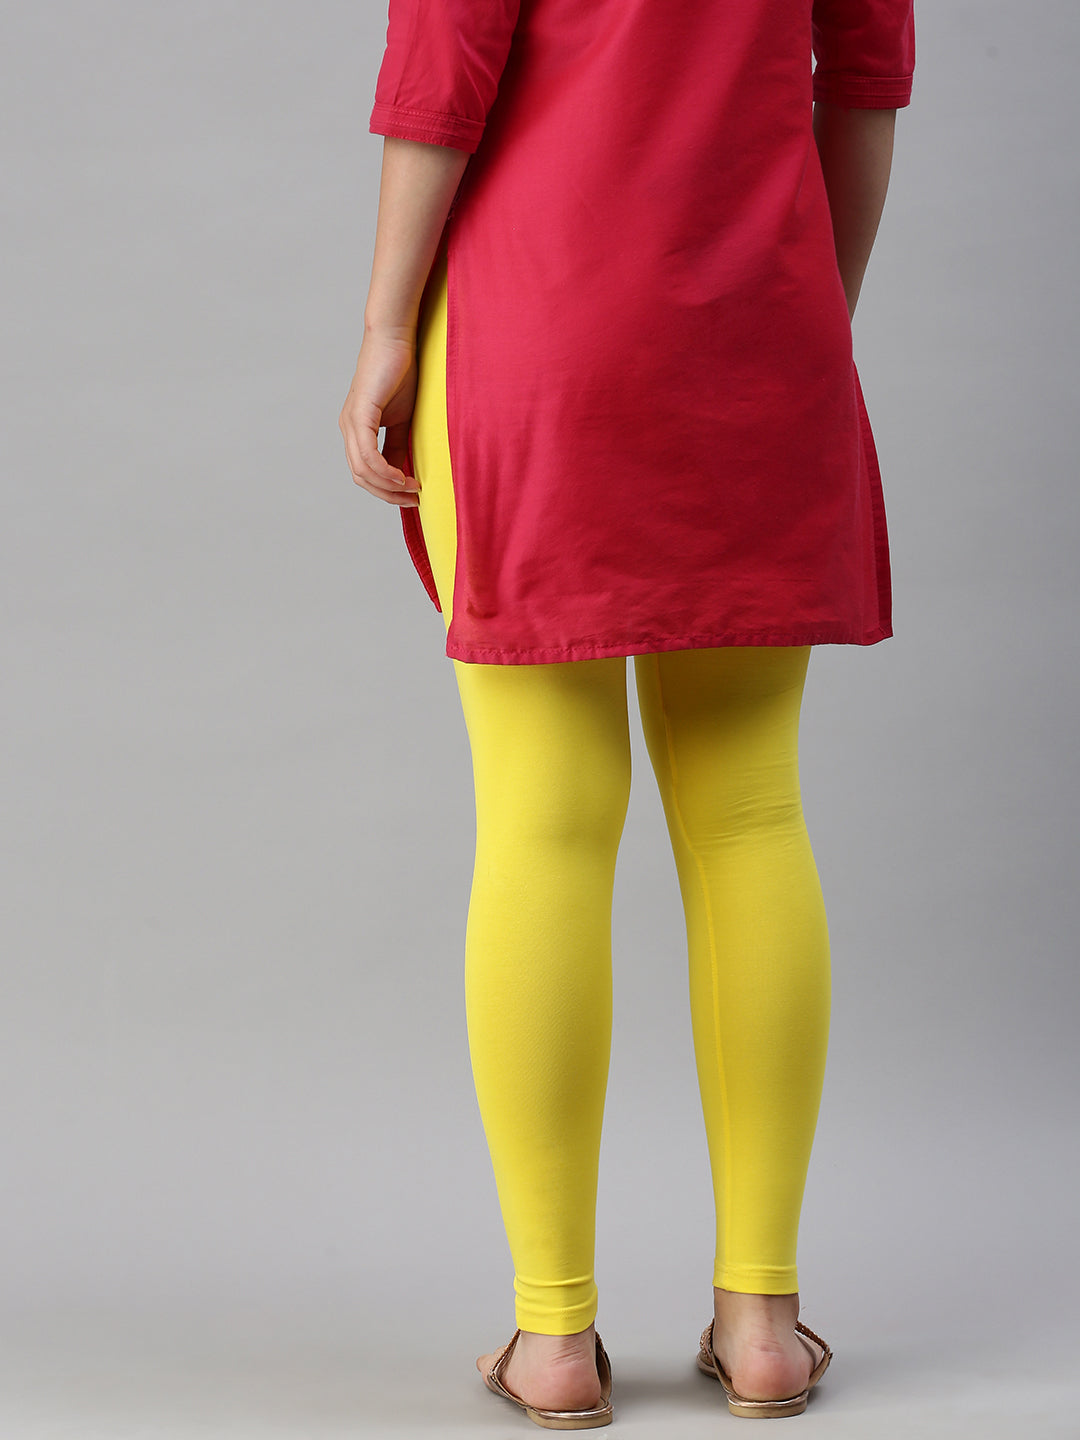 De Moza Ladies Ankle Length Leggings Solid Cotton Lemon Yellow